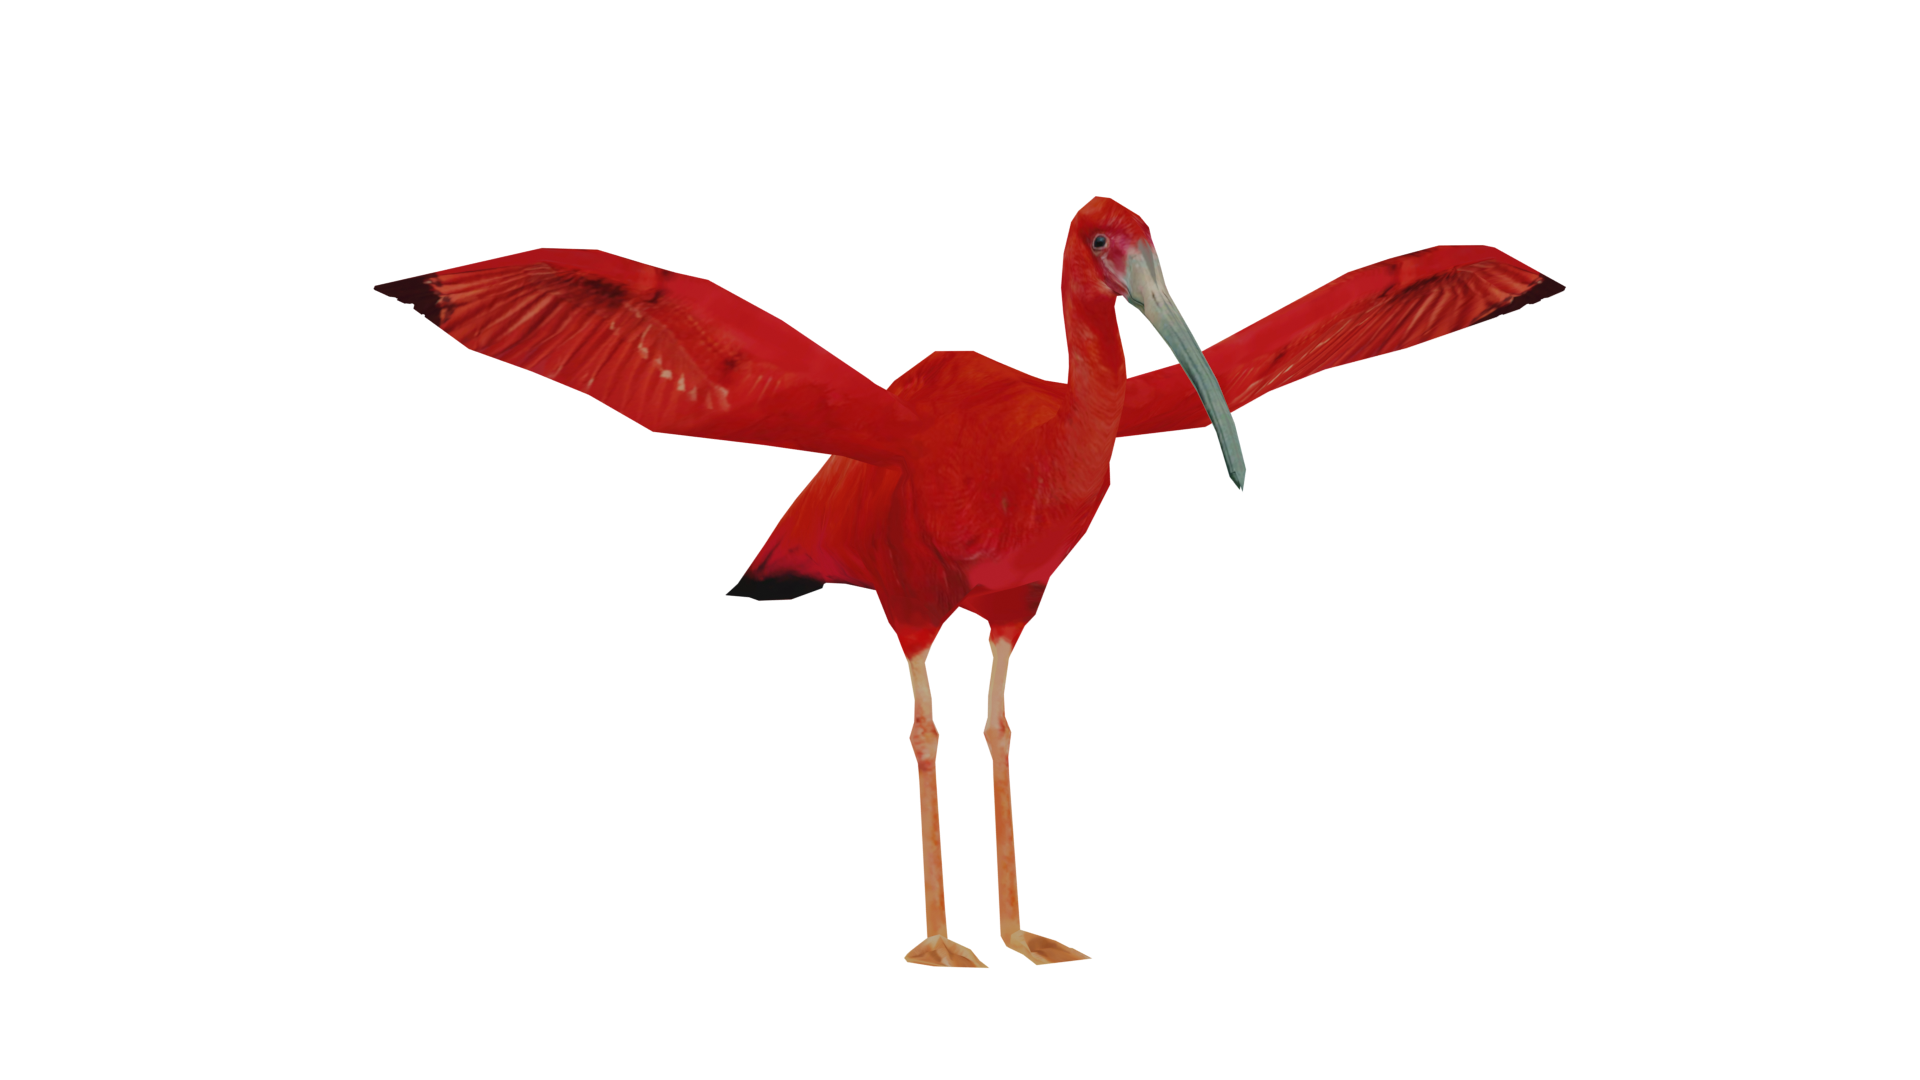 Ibis, Scarlet - Safari West